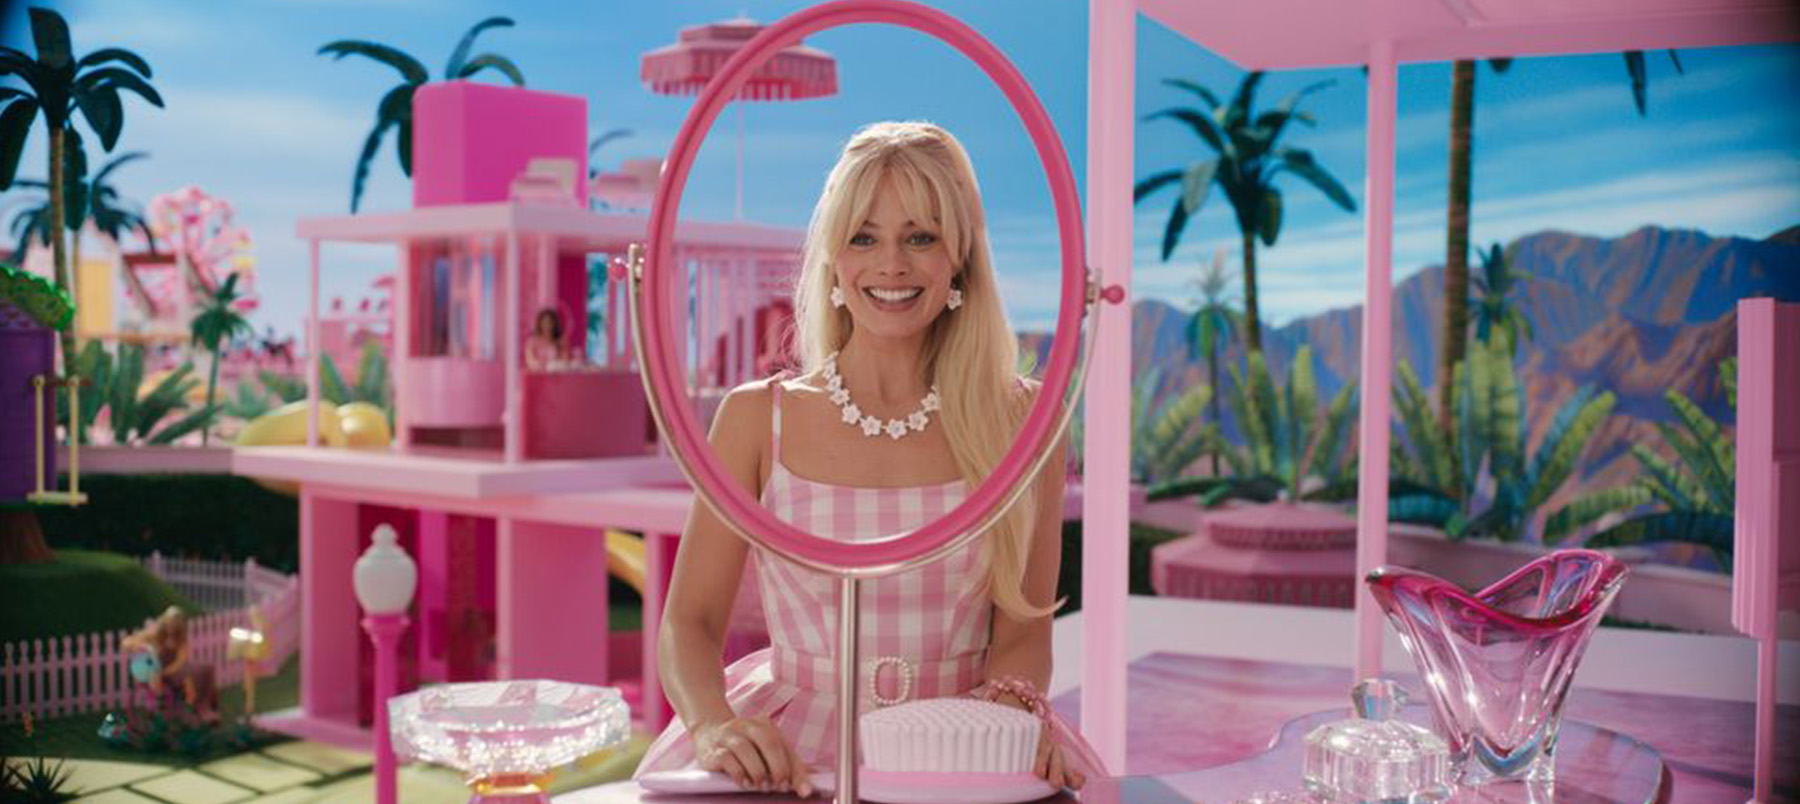 Surfando na onda do filme, Amanda virou Barbie em Campo Grande - PP